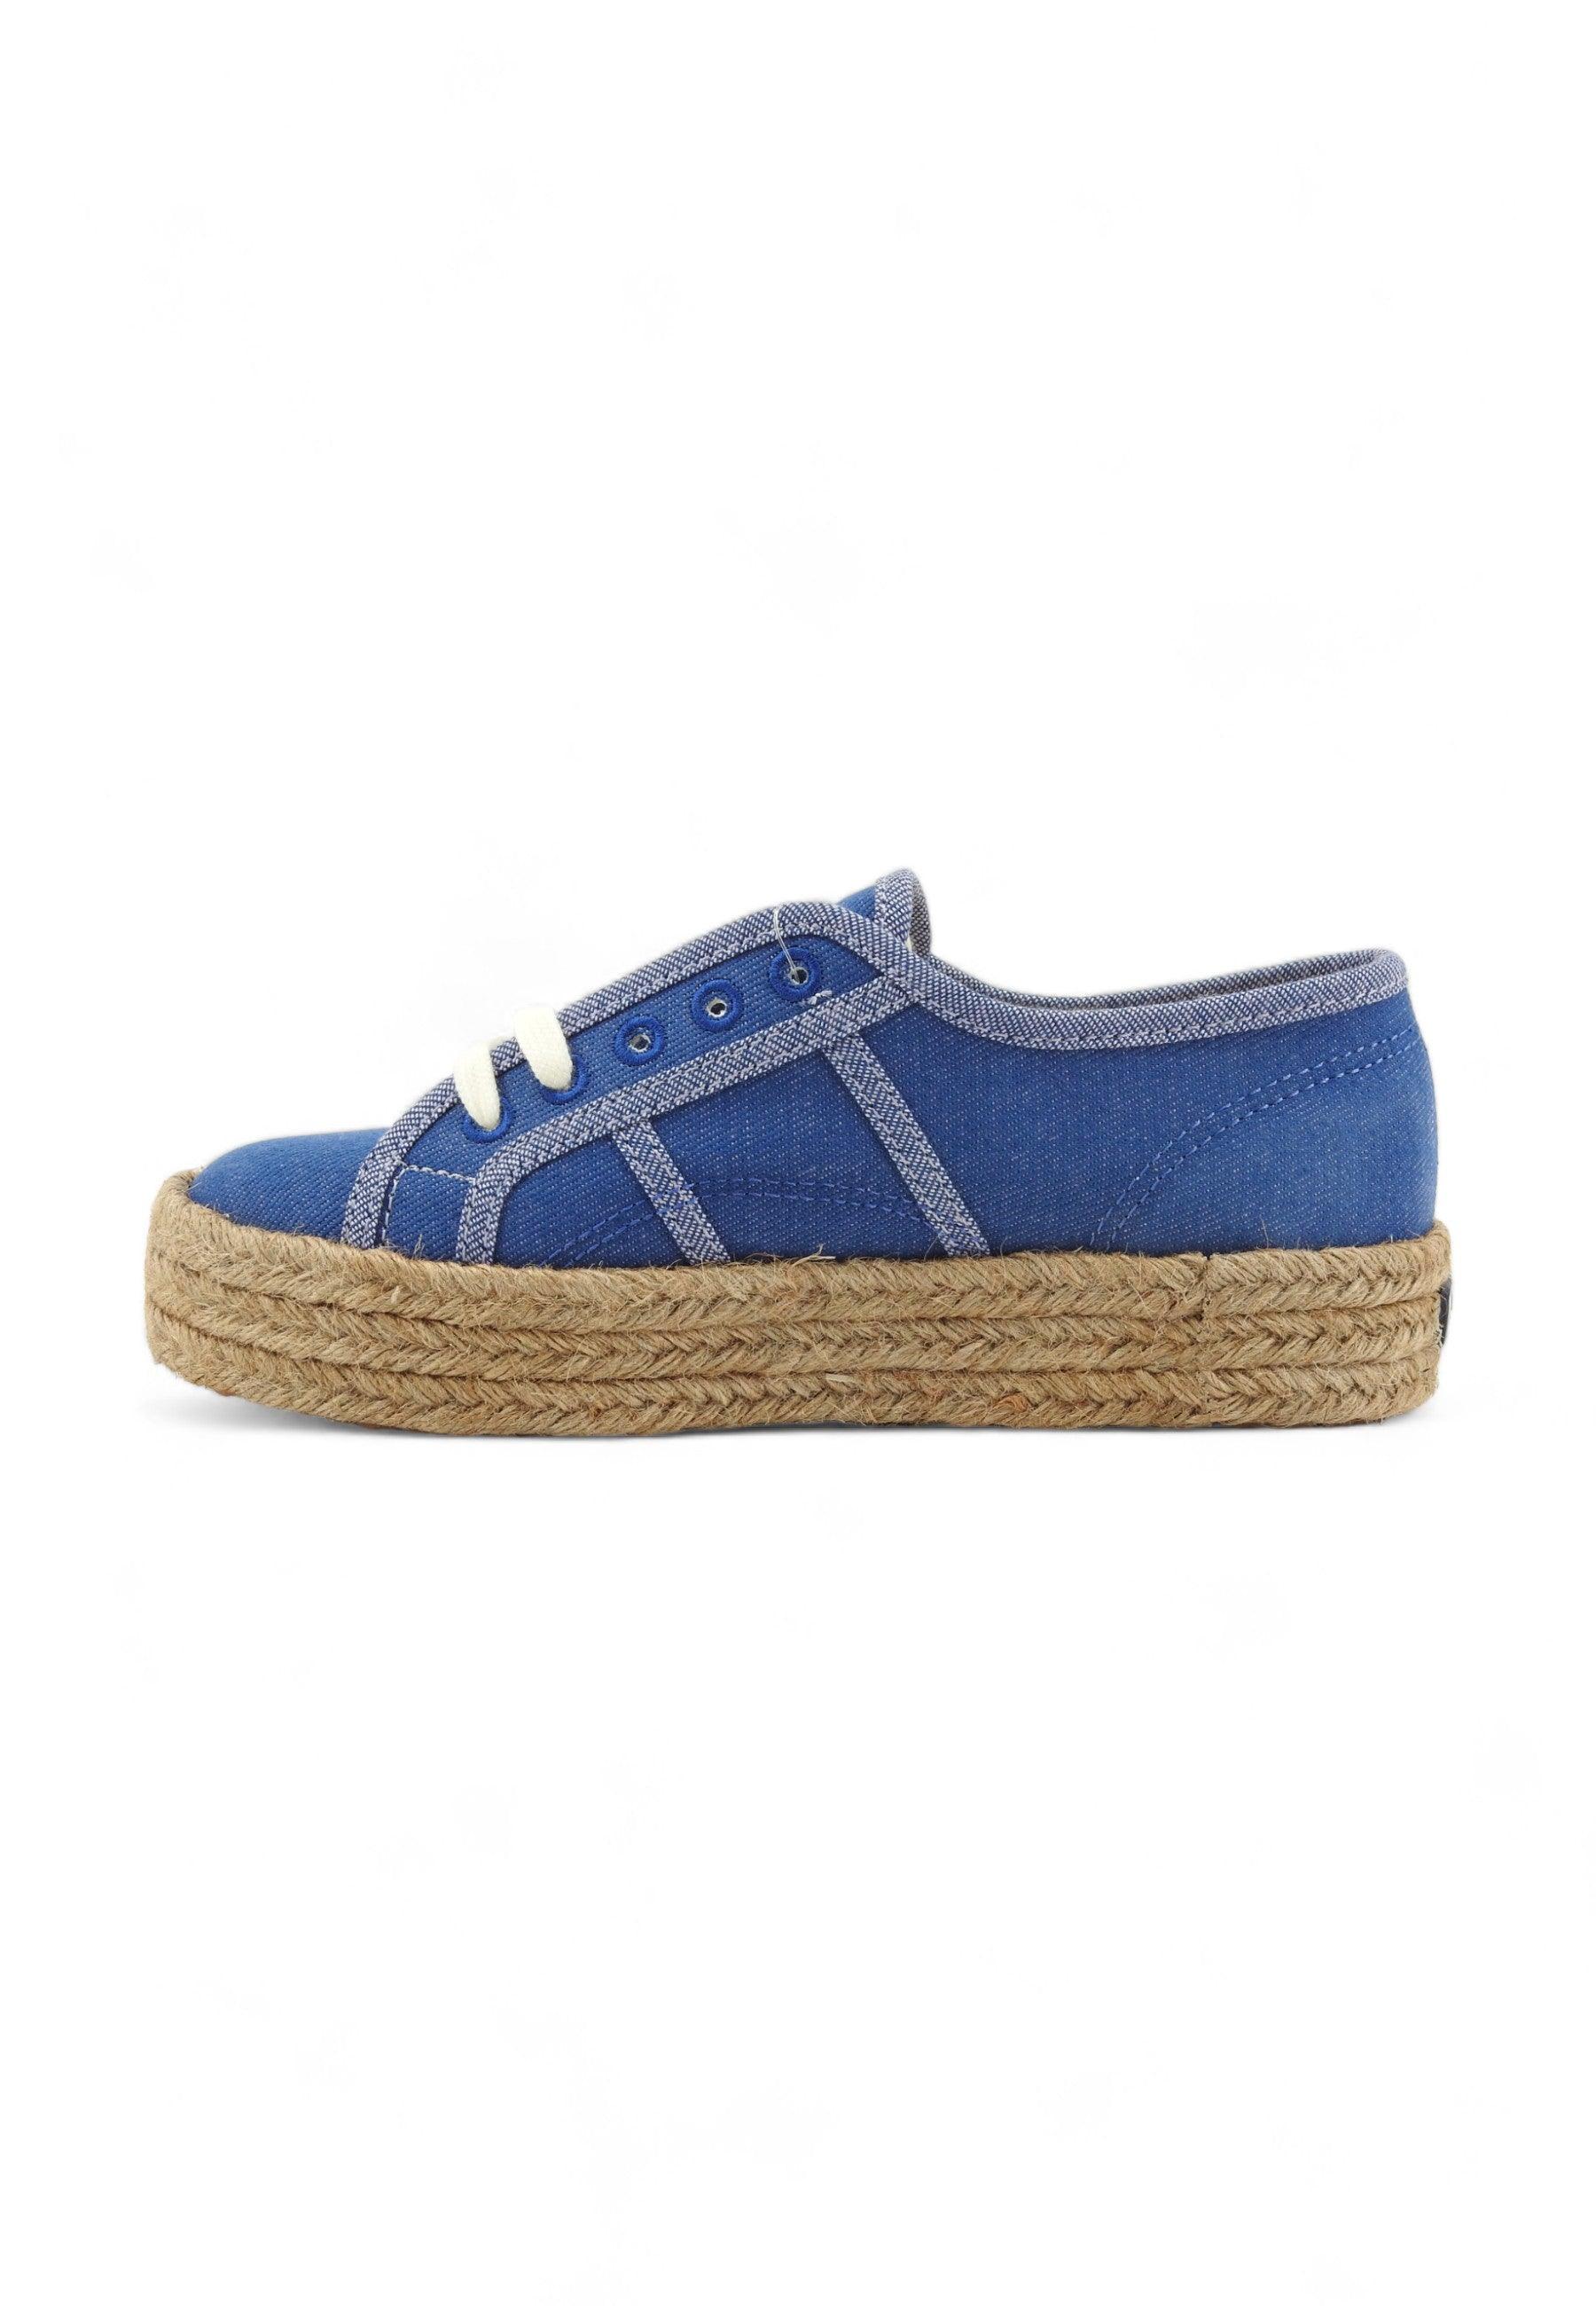 SUPERGA 2730 Sneaker Donna Jeans Blue S8141XW - Sandrini Calzature e Abbigliamento